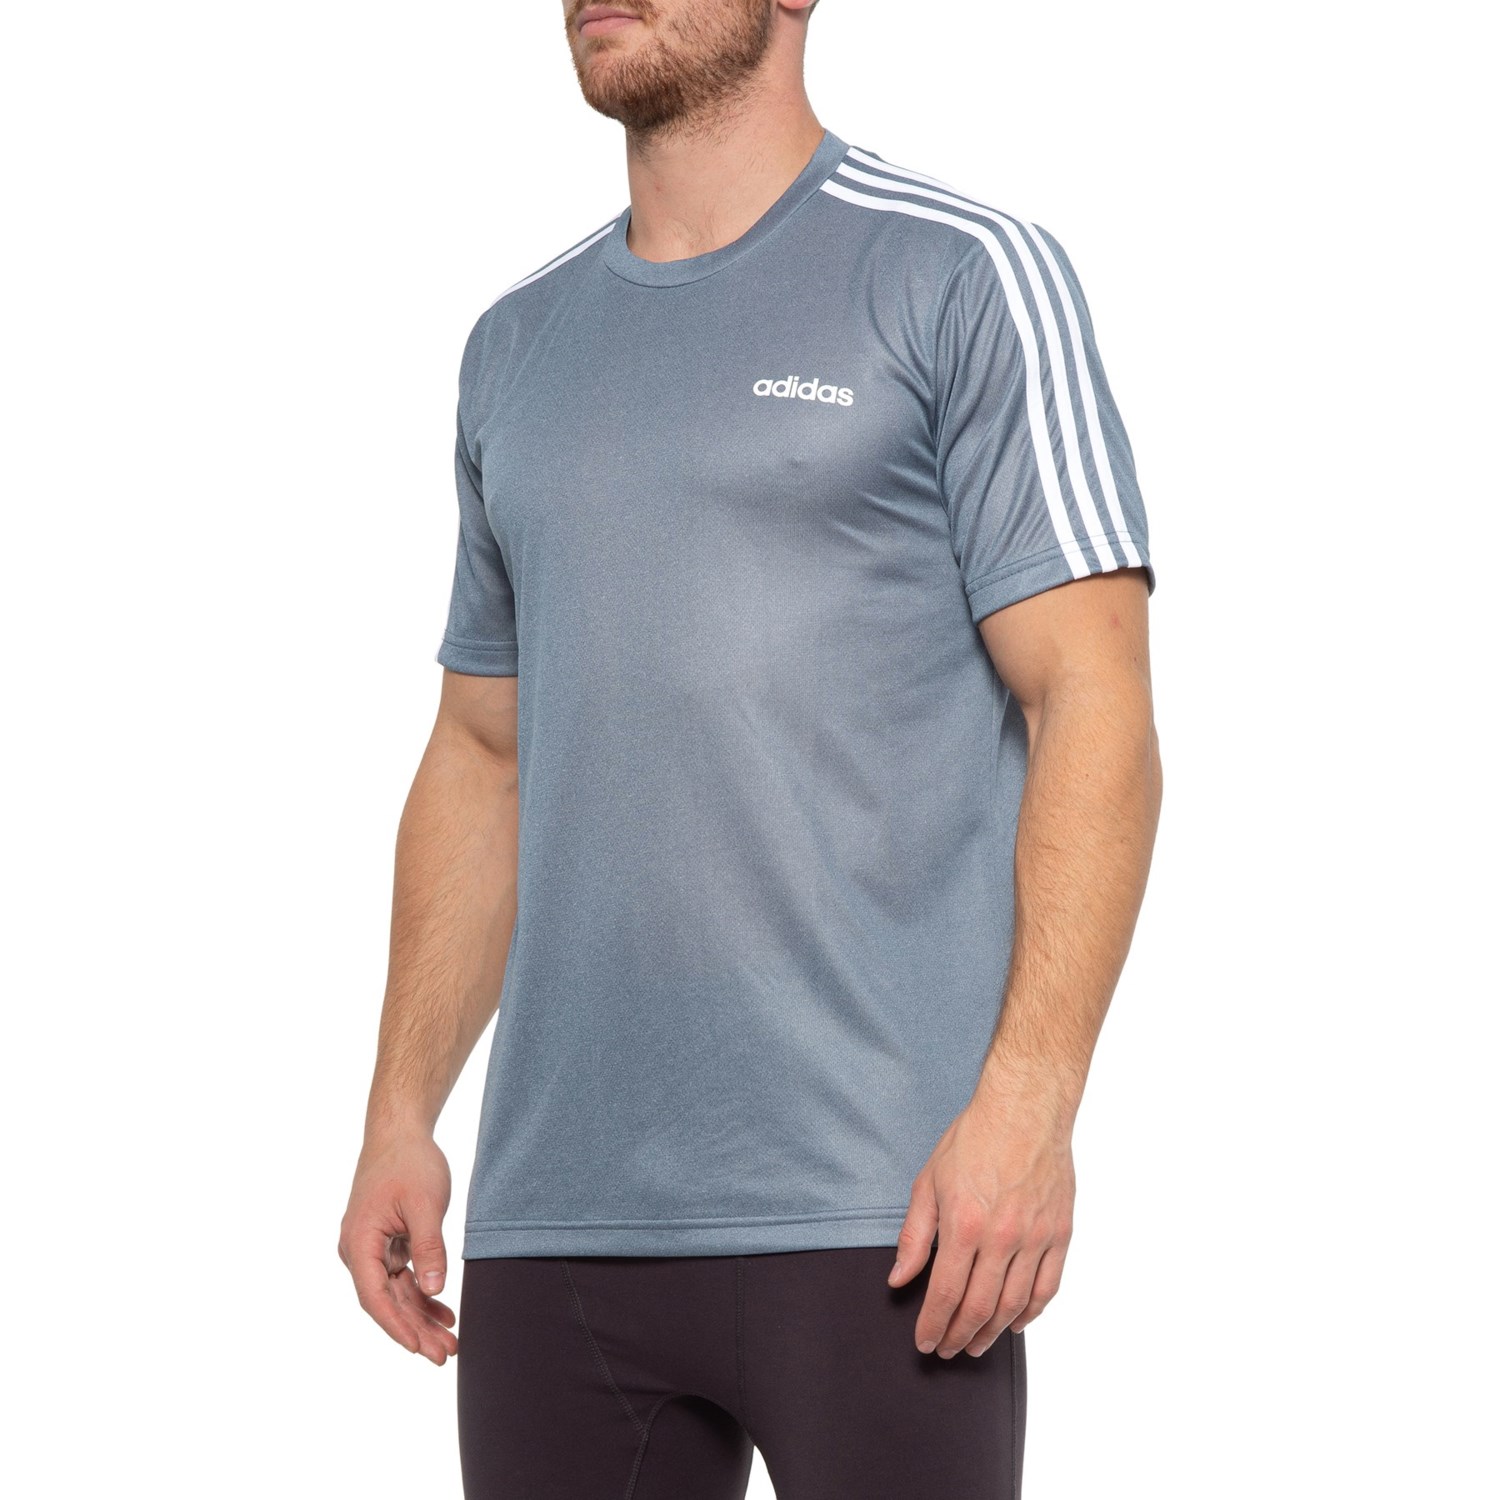 Adidas 3 Stripe Pes T Shirt For Men Save 65